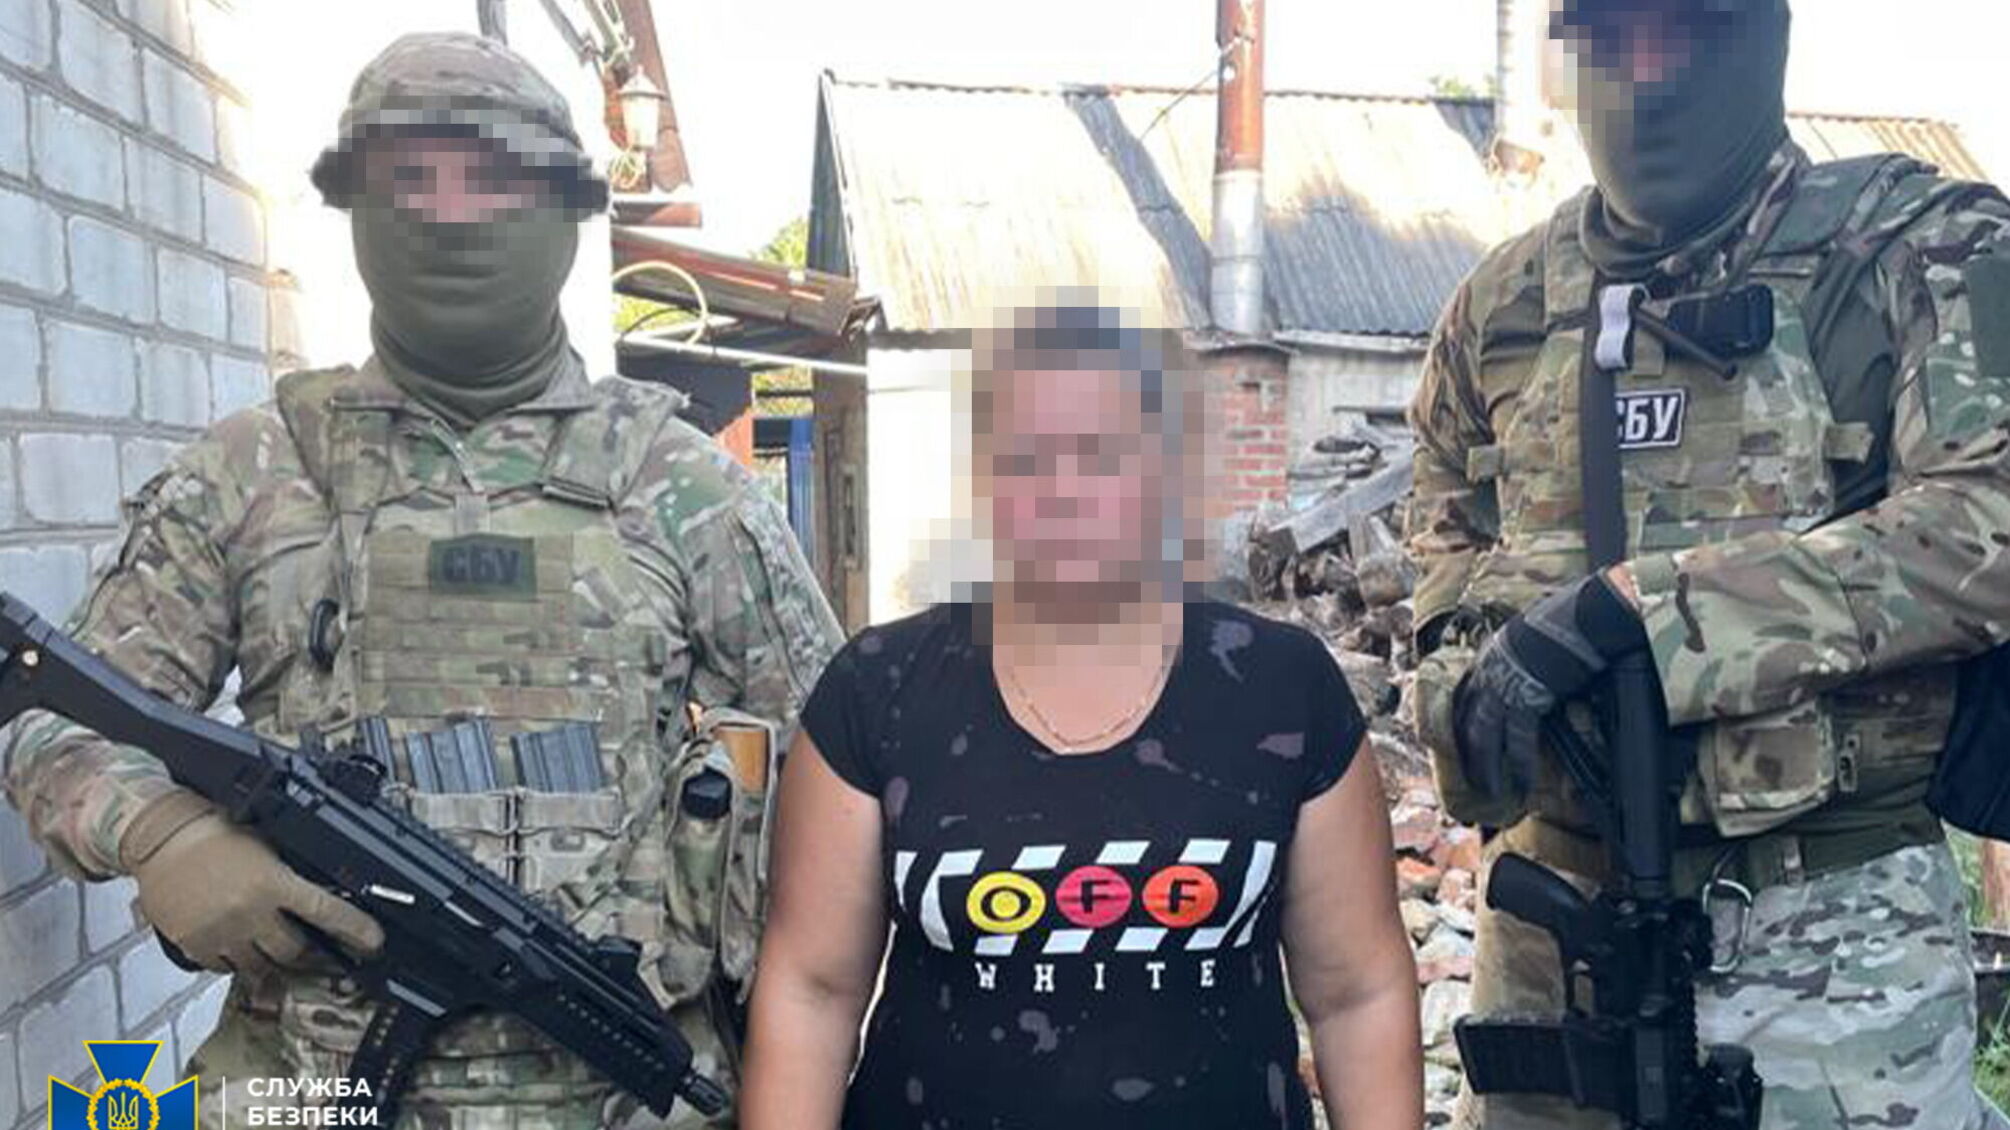 Женщина 'сливала' данные об украинских военных